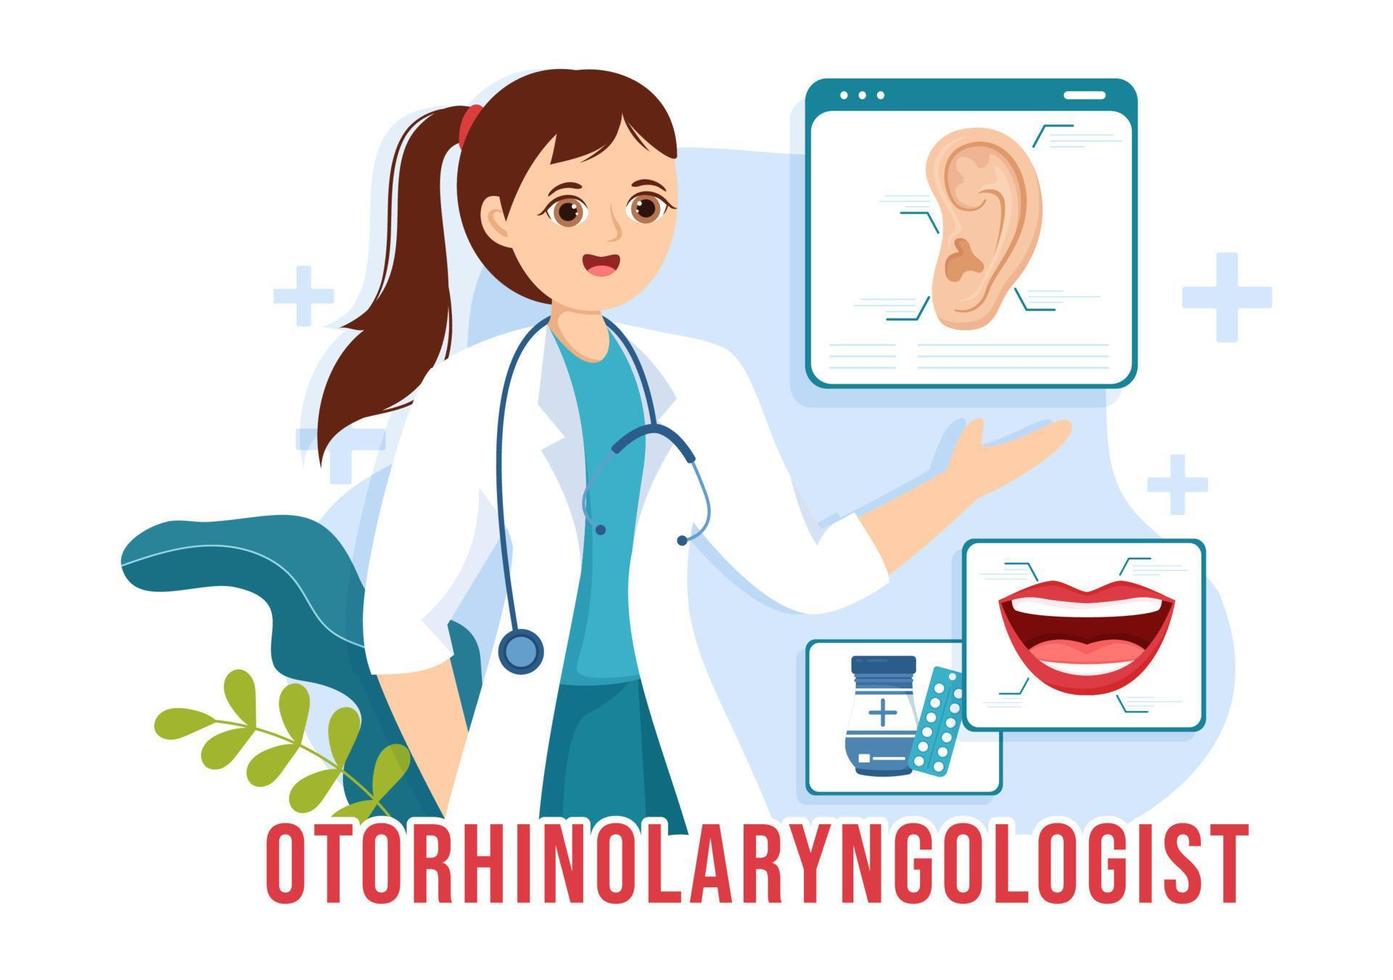 oto-rhino-laryngologiste illustration avec médical concernant à le oreille, nez et gorge dans soins de santé plat dessin animé main tiré atterrissage page modèles vecteur